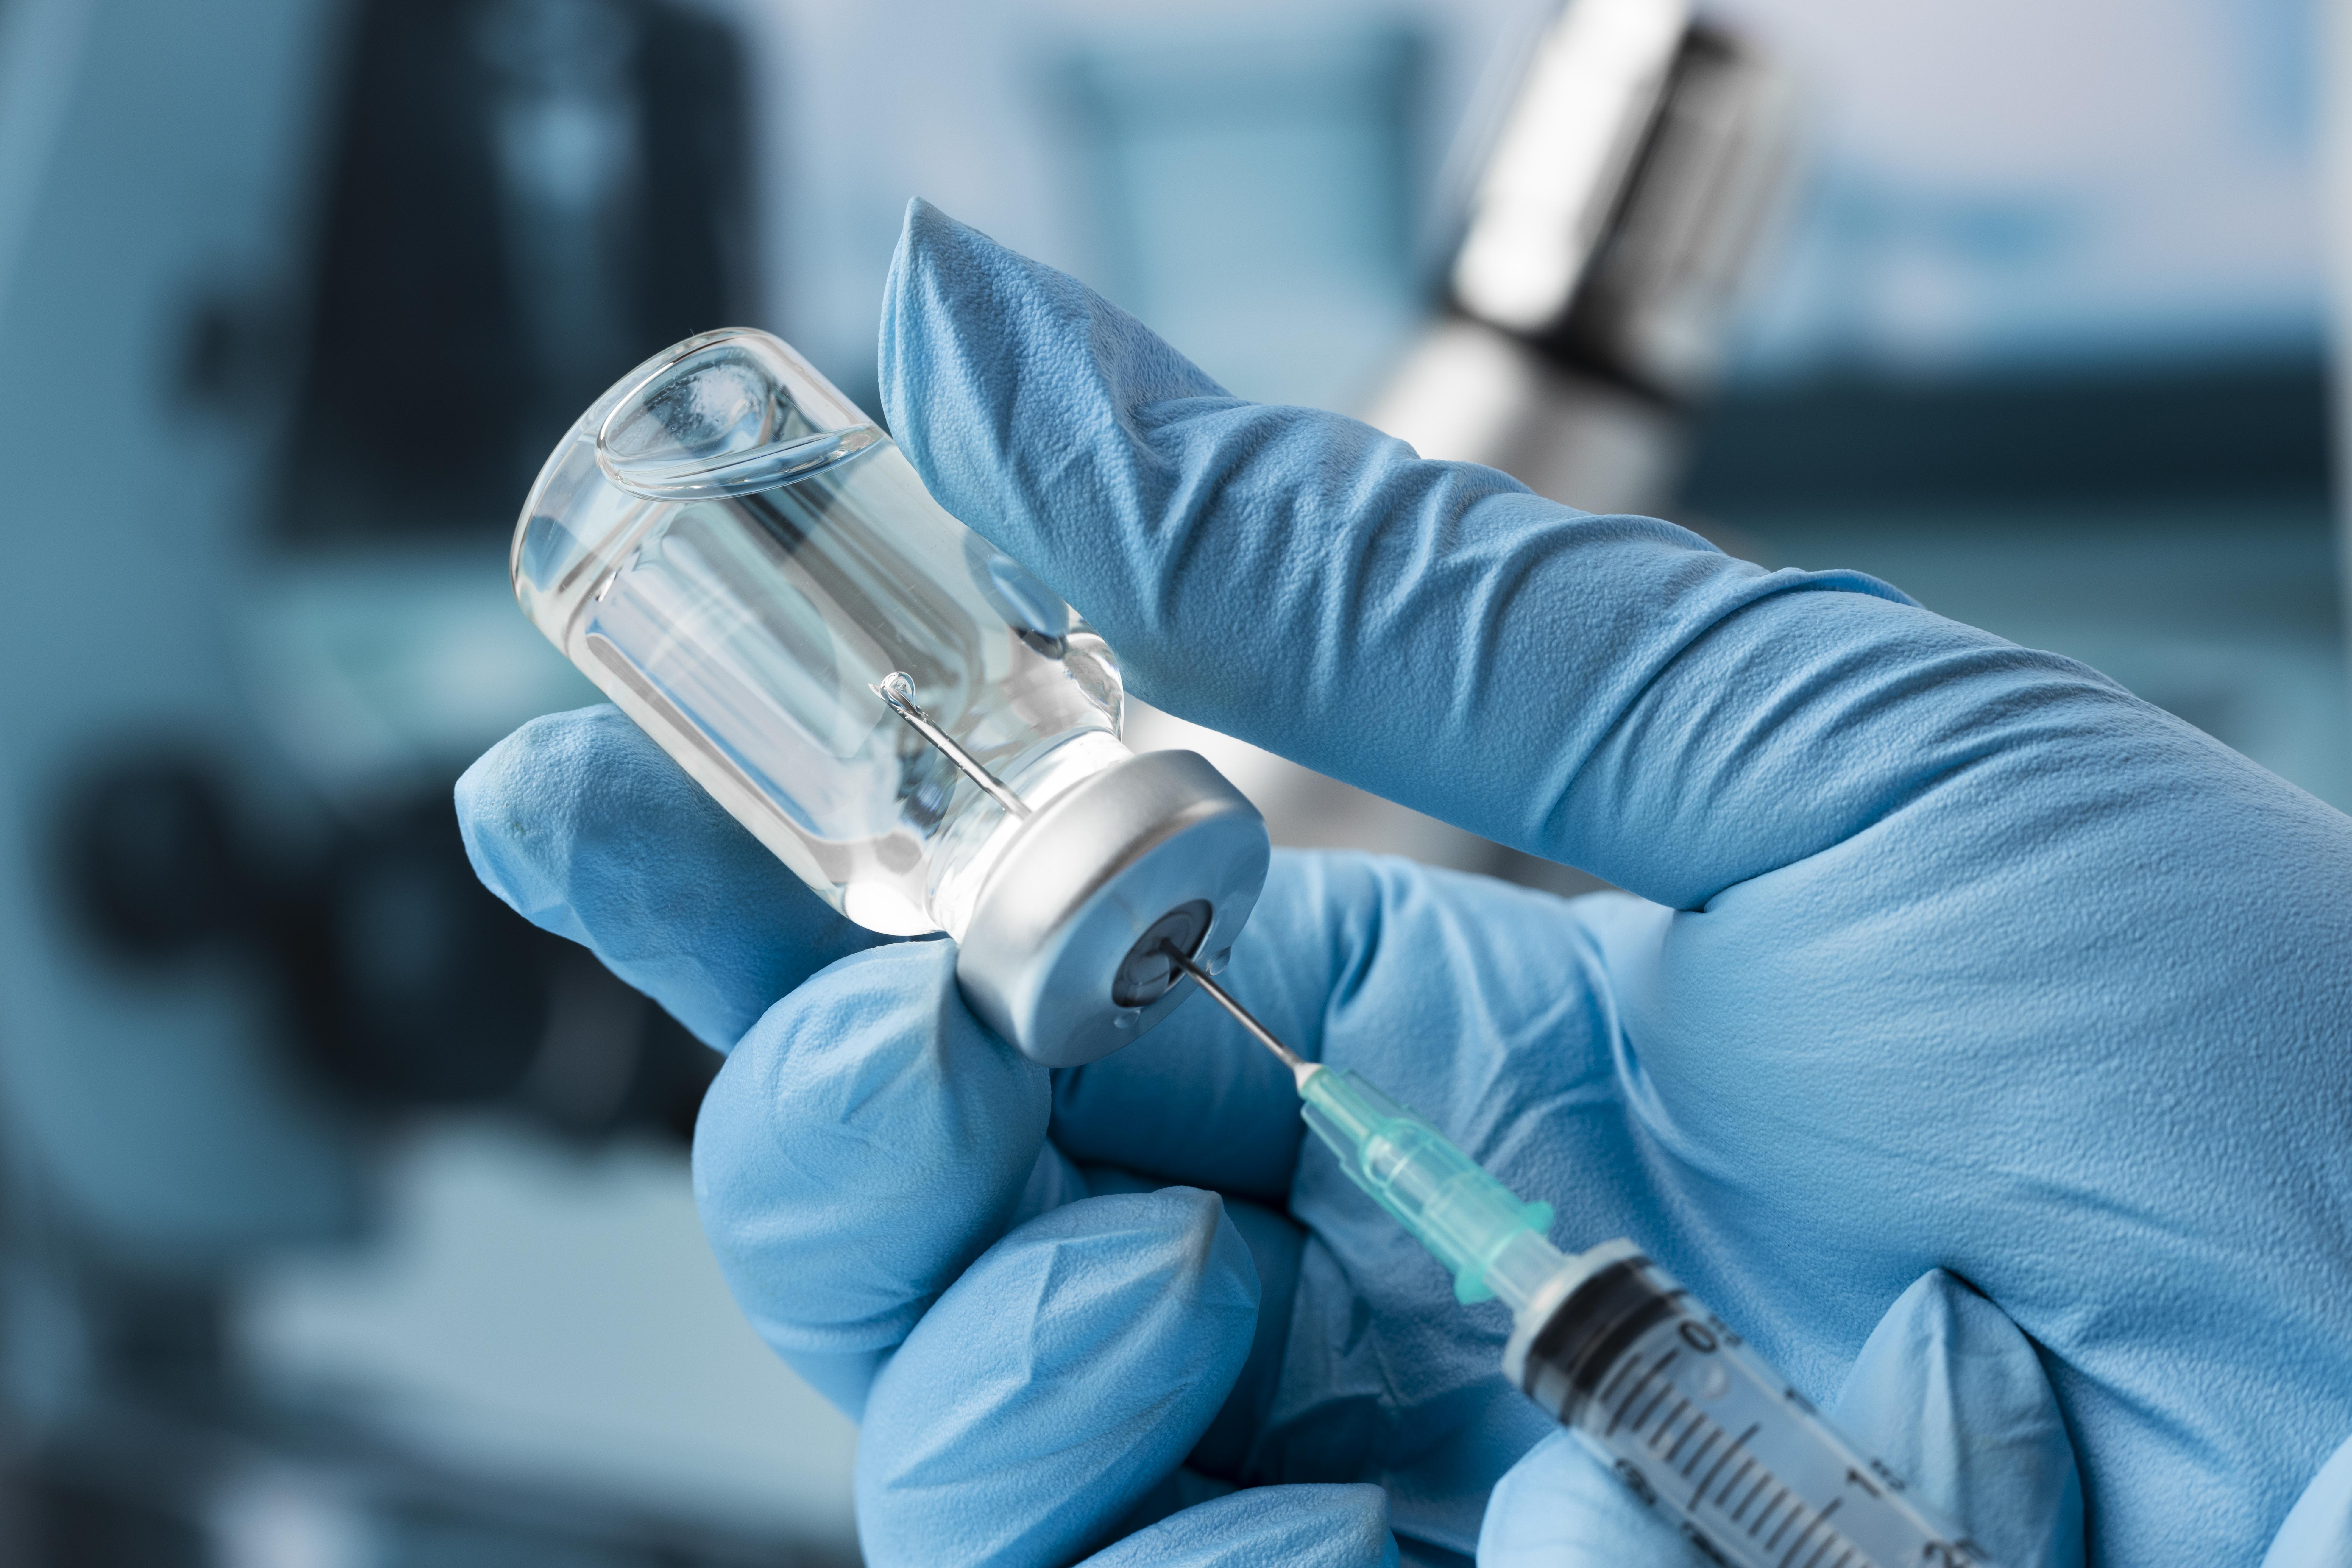 Mão de um profissional de saúde com luva cirúrgica azul usando uma seringa para retirar vacina de uma ampola